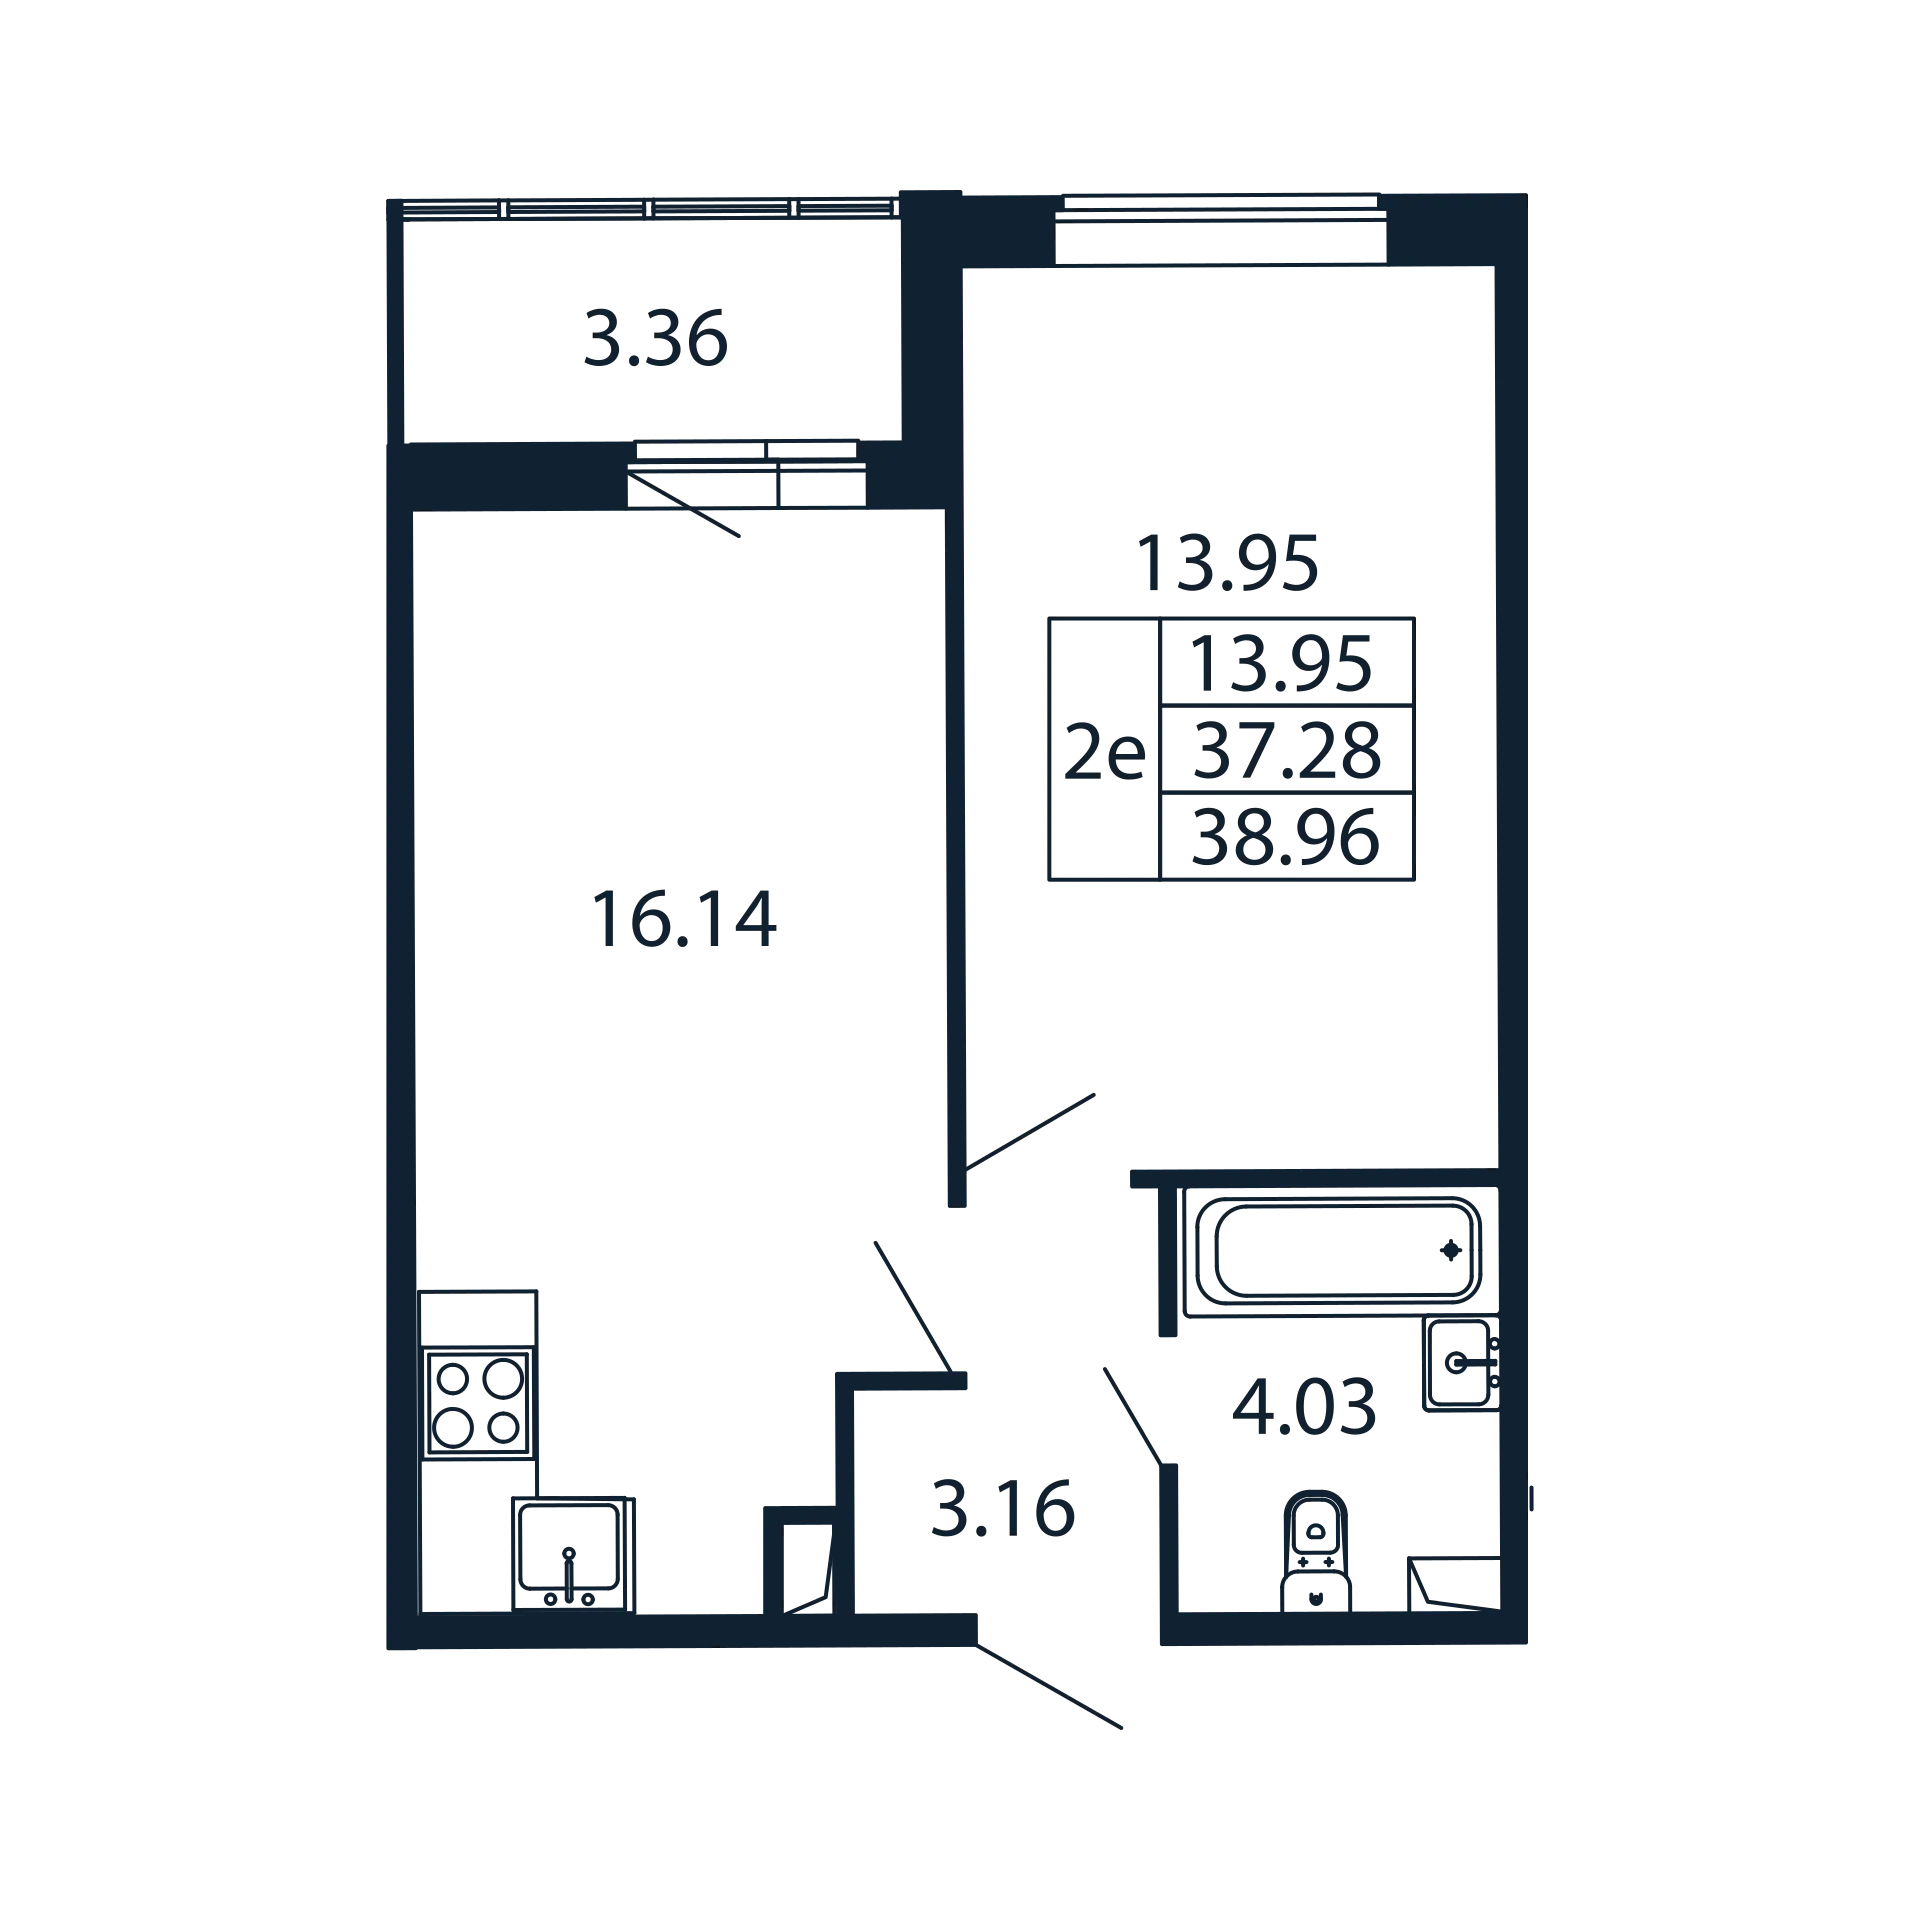 2-комнатная (Евро) квартира, 37.28 м² в ЖК "Полис ЛАВрики" - планировка, фото №1